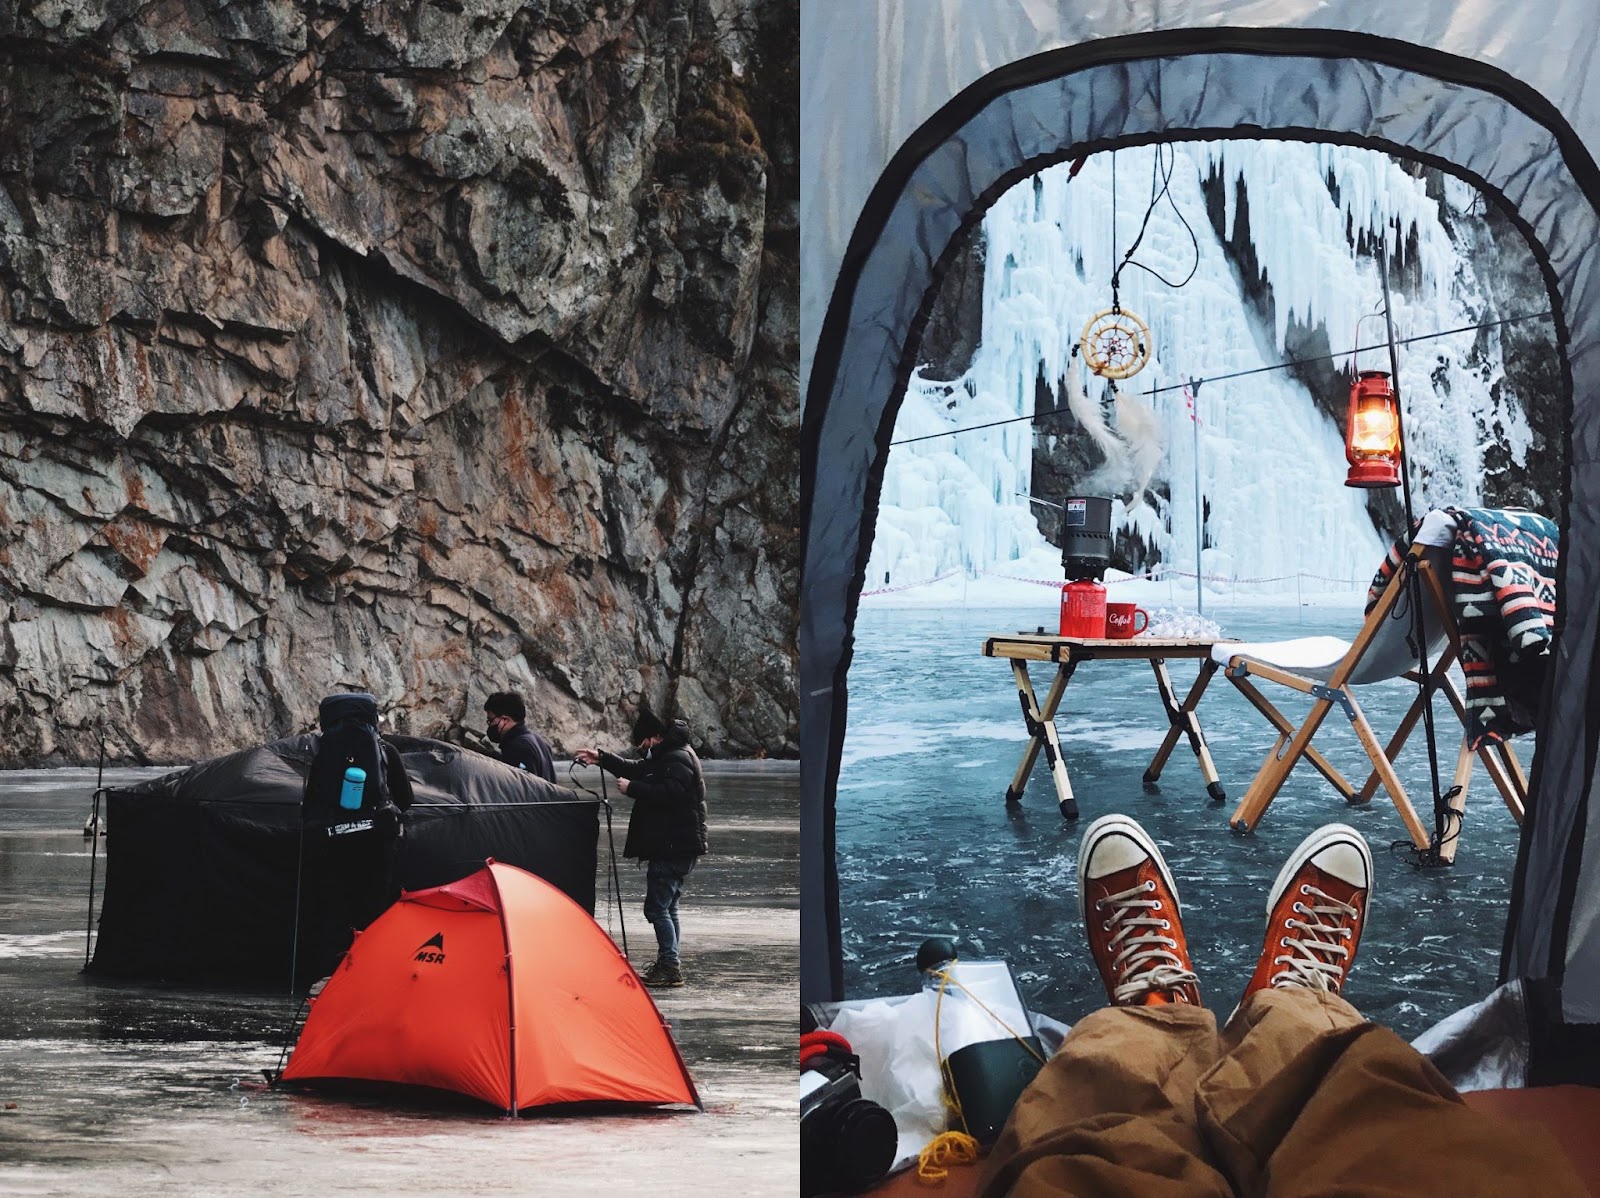 Chàng trai Việt vượt 300 km đi cắm trại trên sông băng tuyệt đẹp ở Hàn Quốc - Ảnh 5.